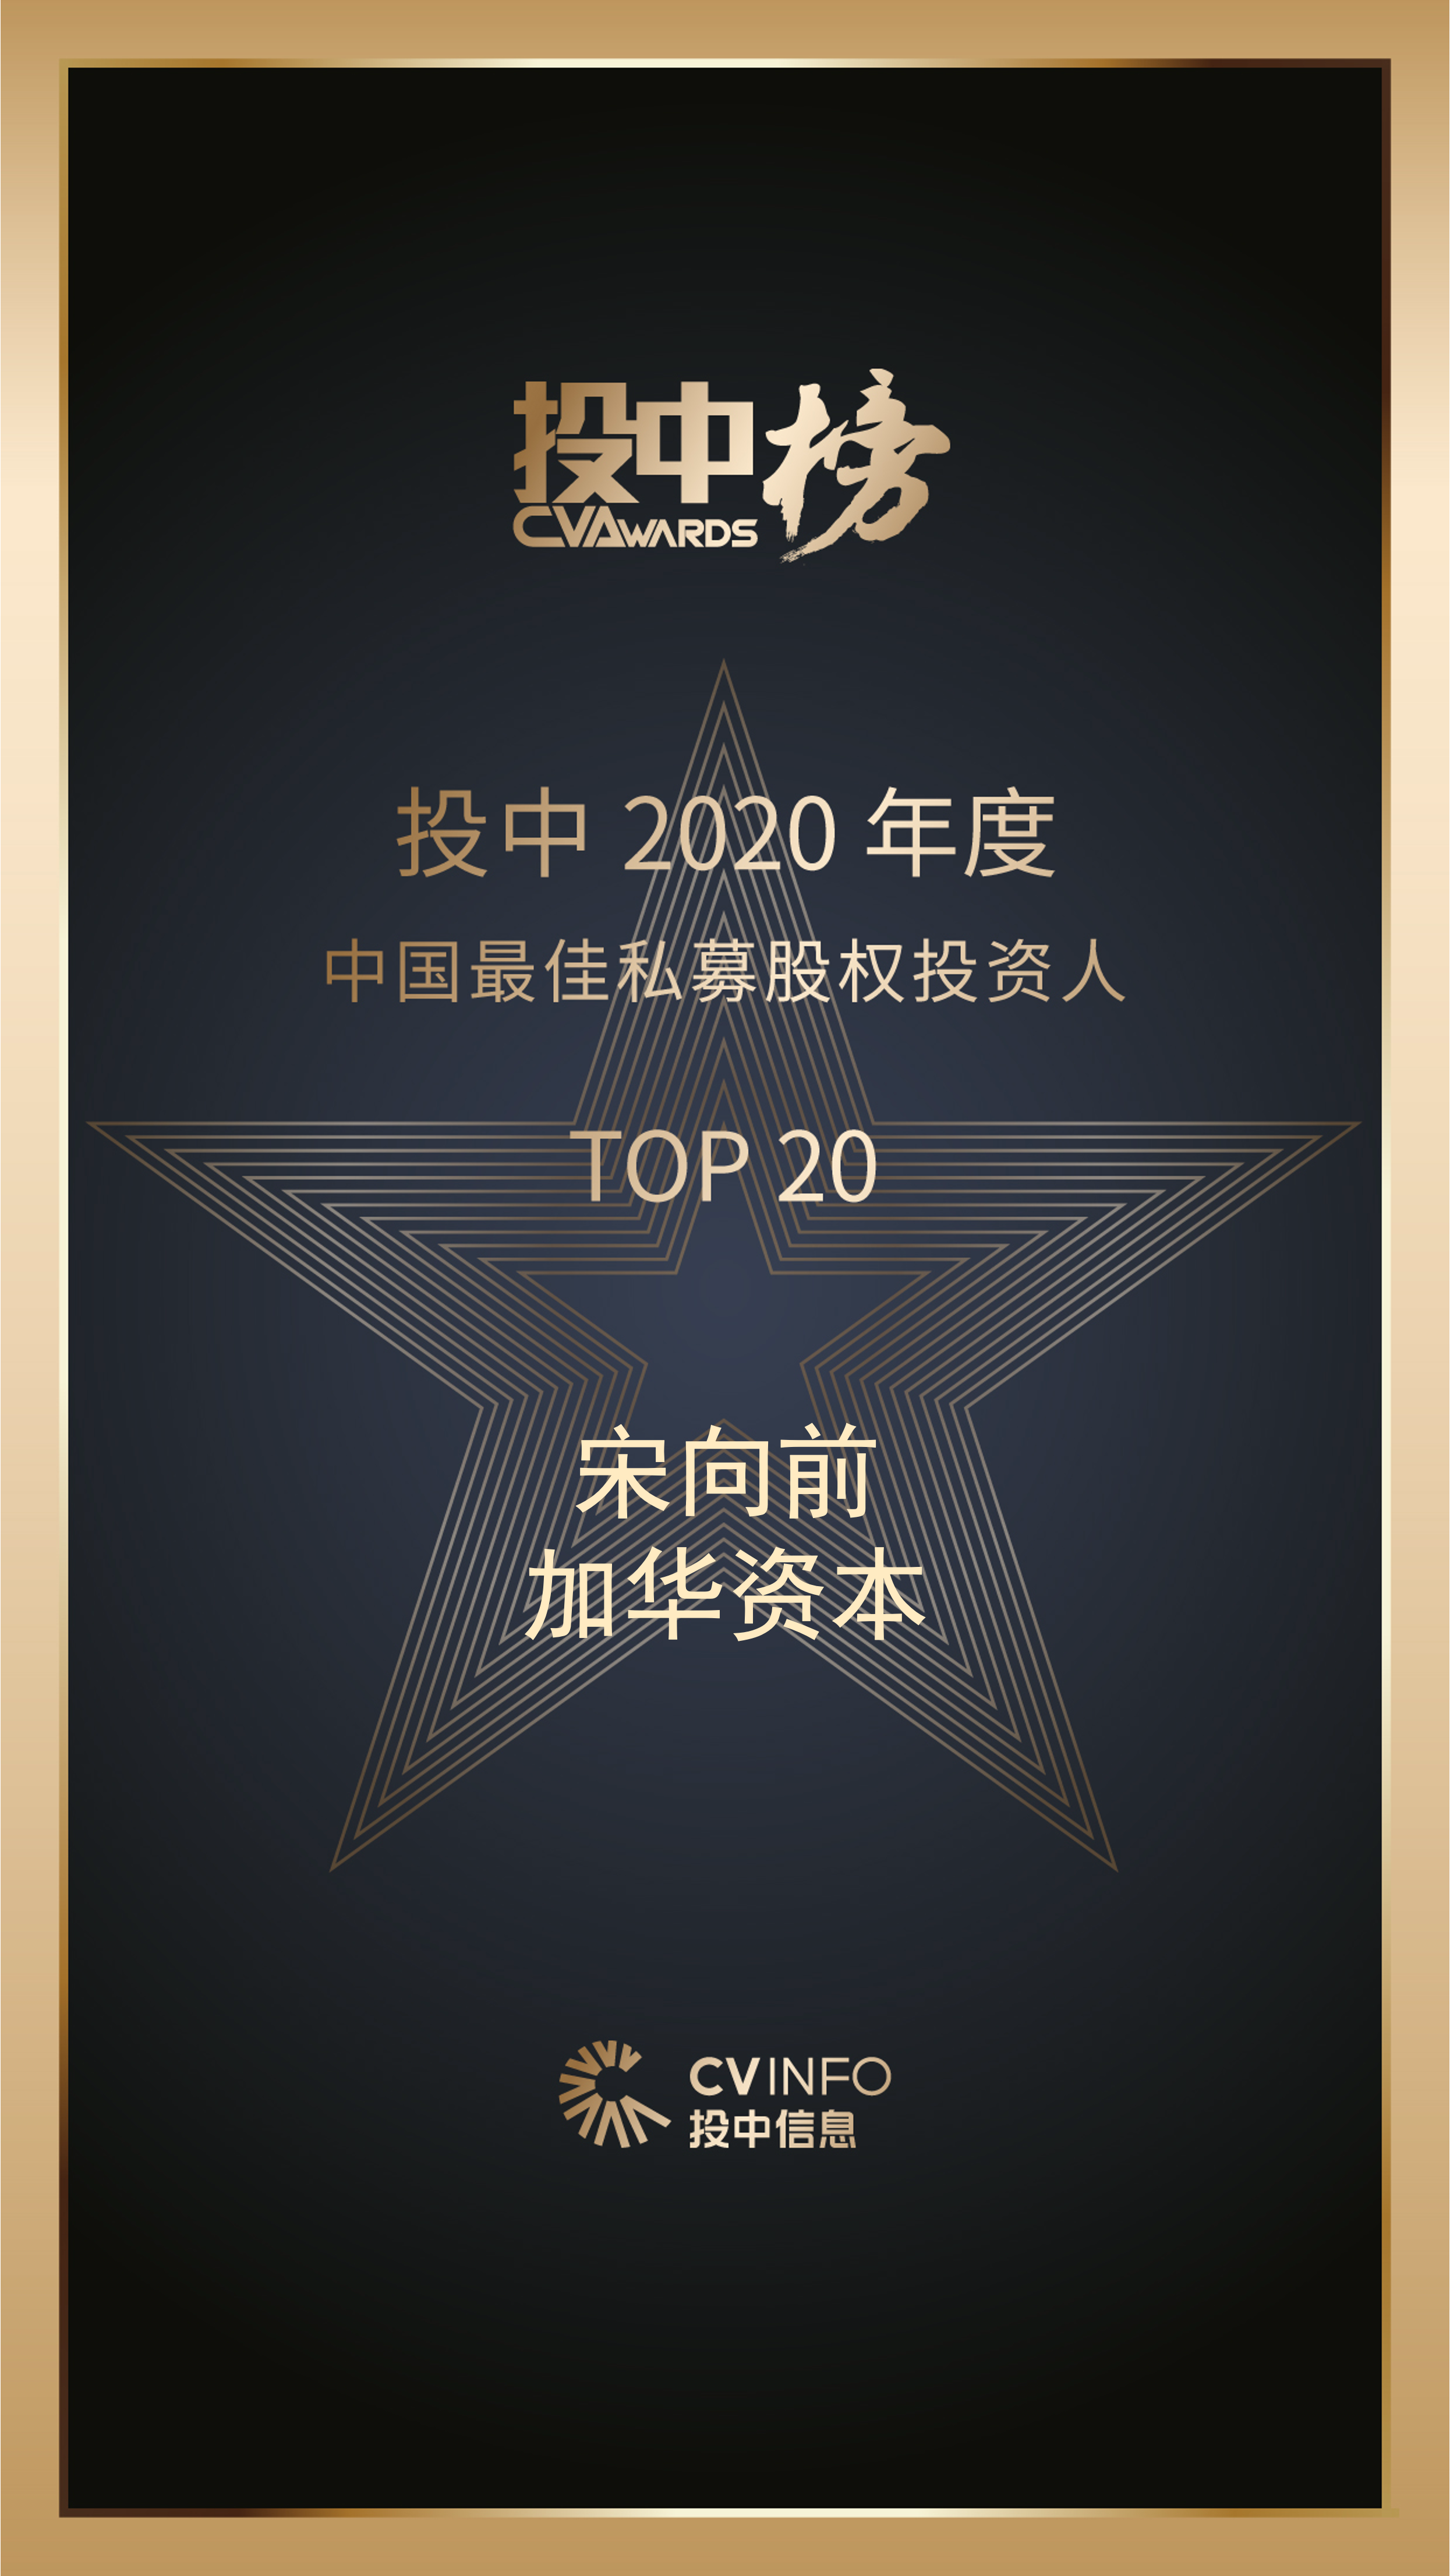 宋向前先生荣获“投中2020年投资人榜”多项殊荣 | 加华新闻